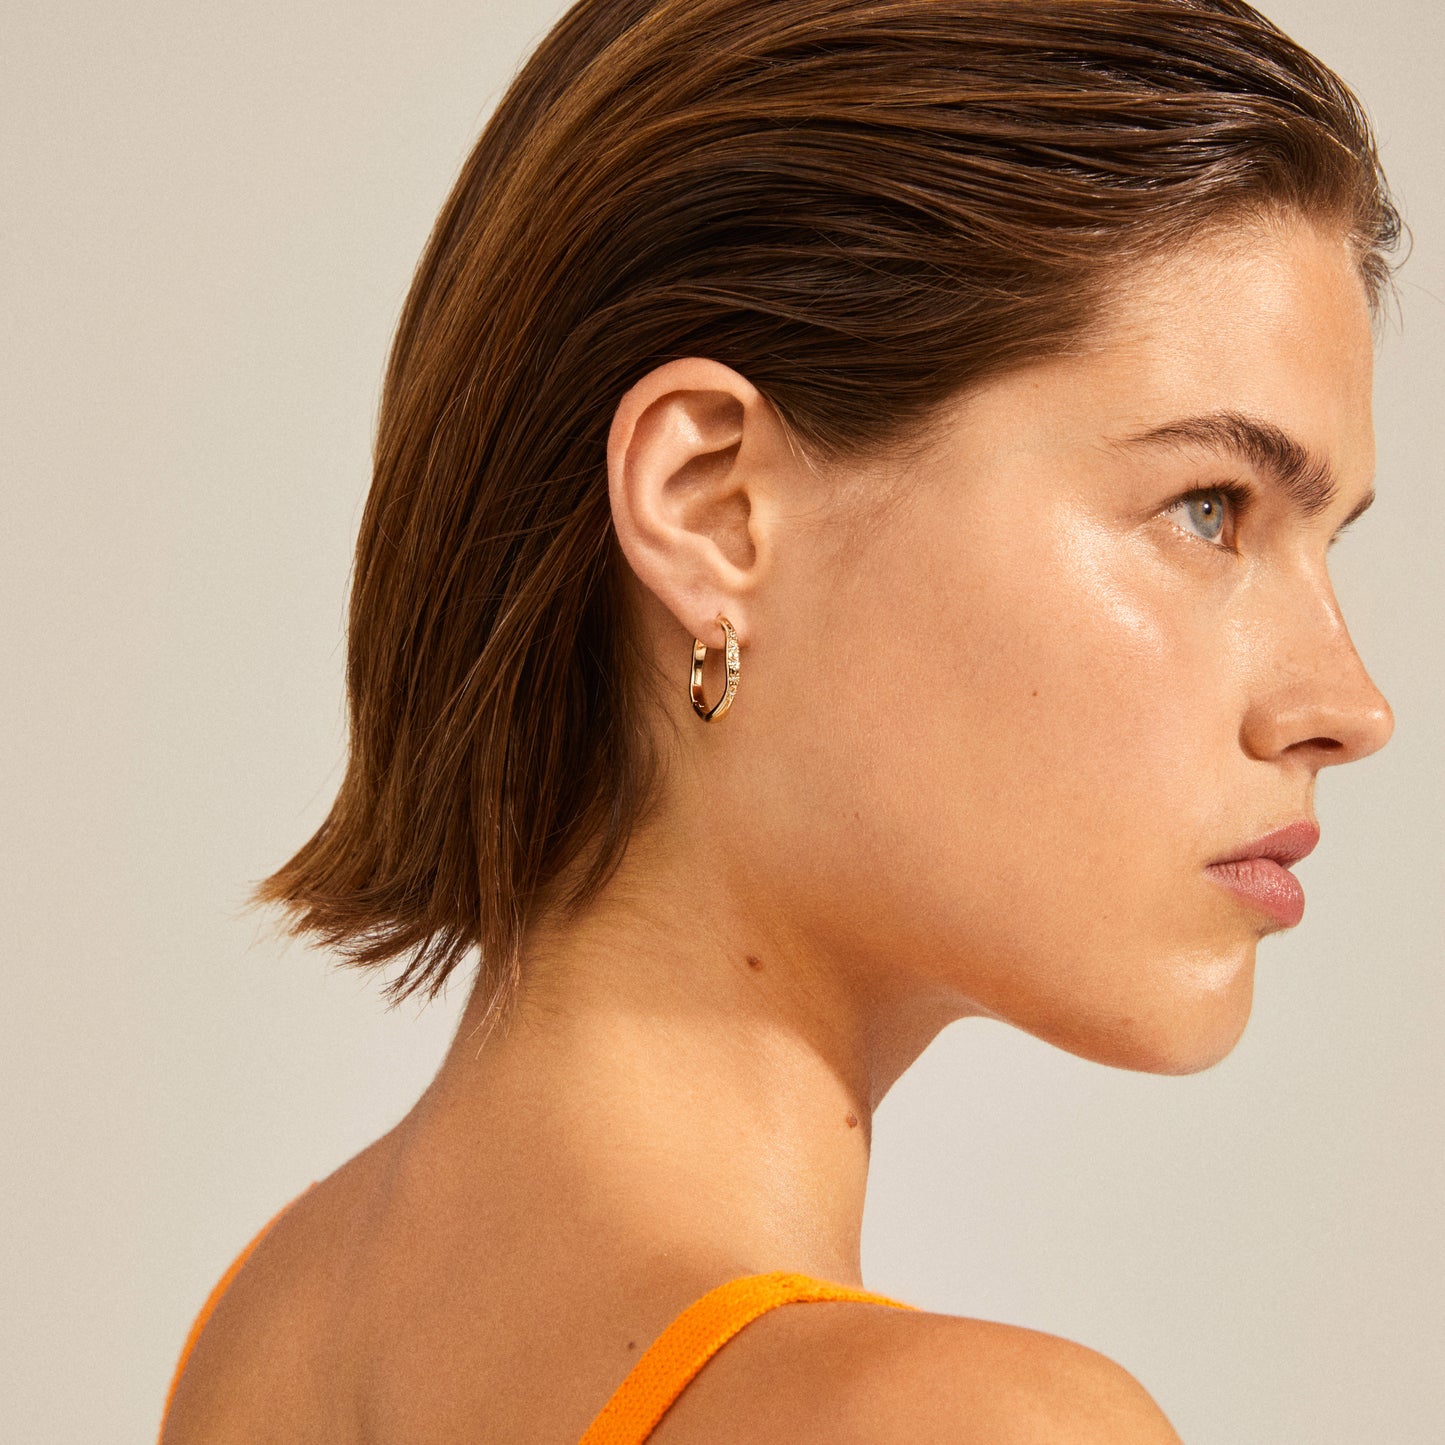 EDURNE crystal hoop earrings rosegold-plated